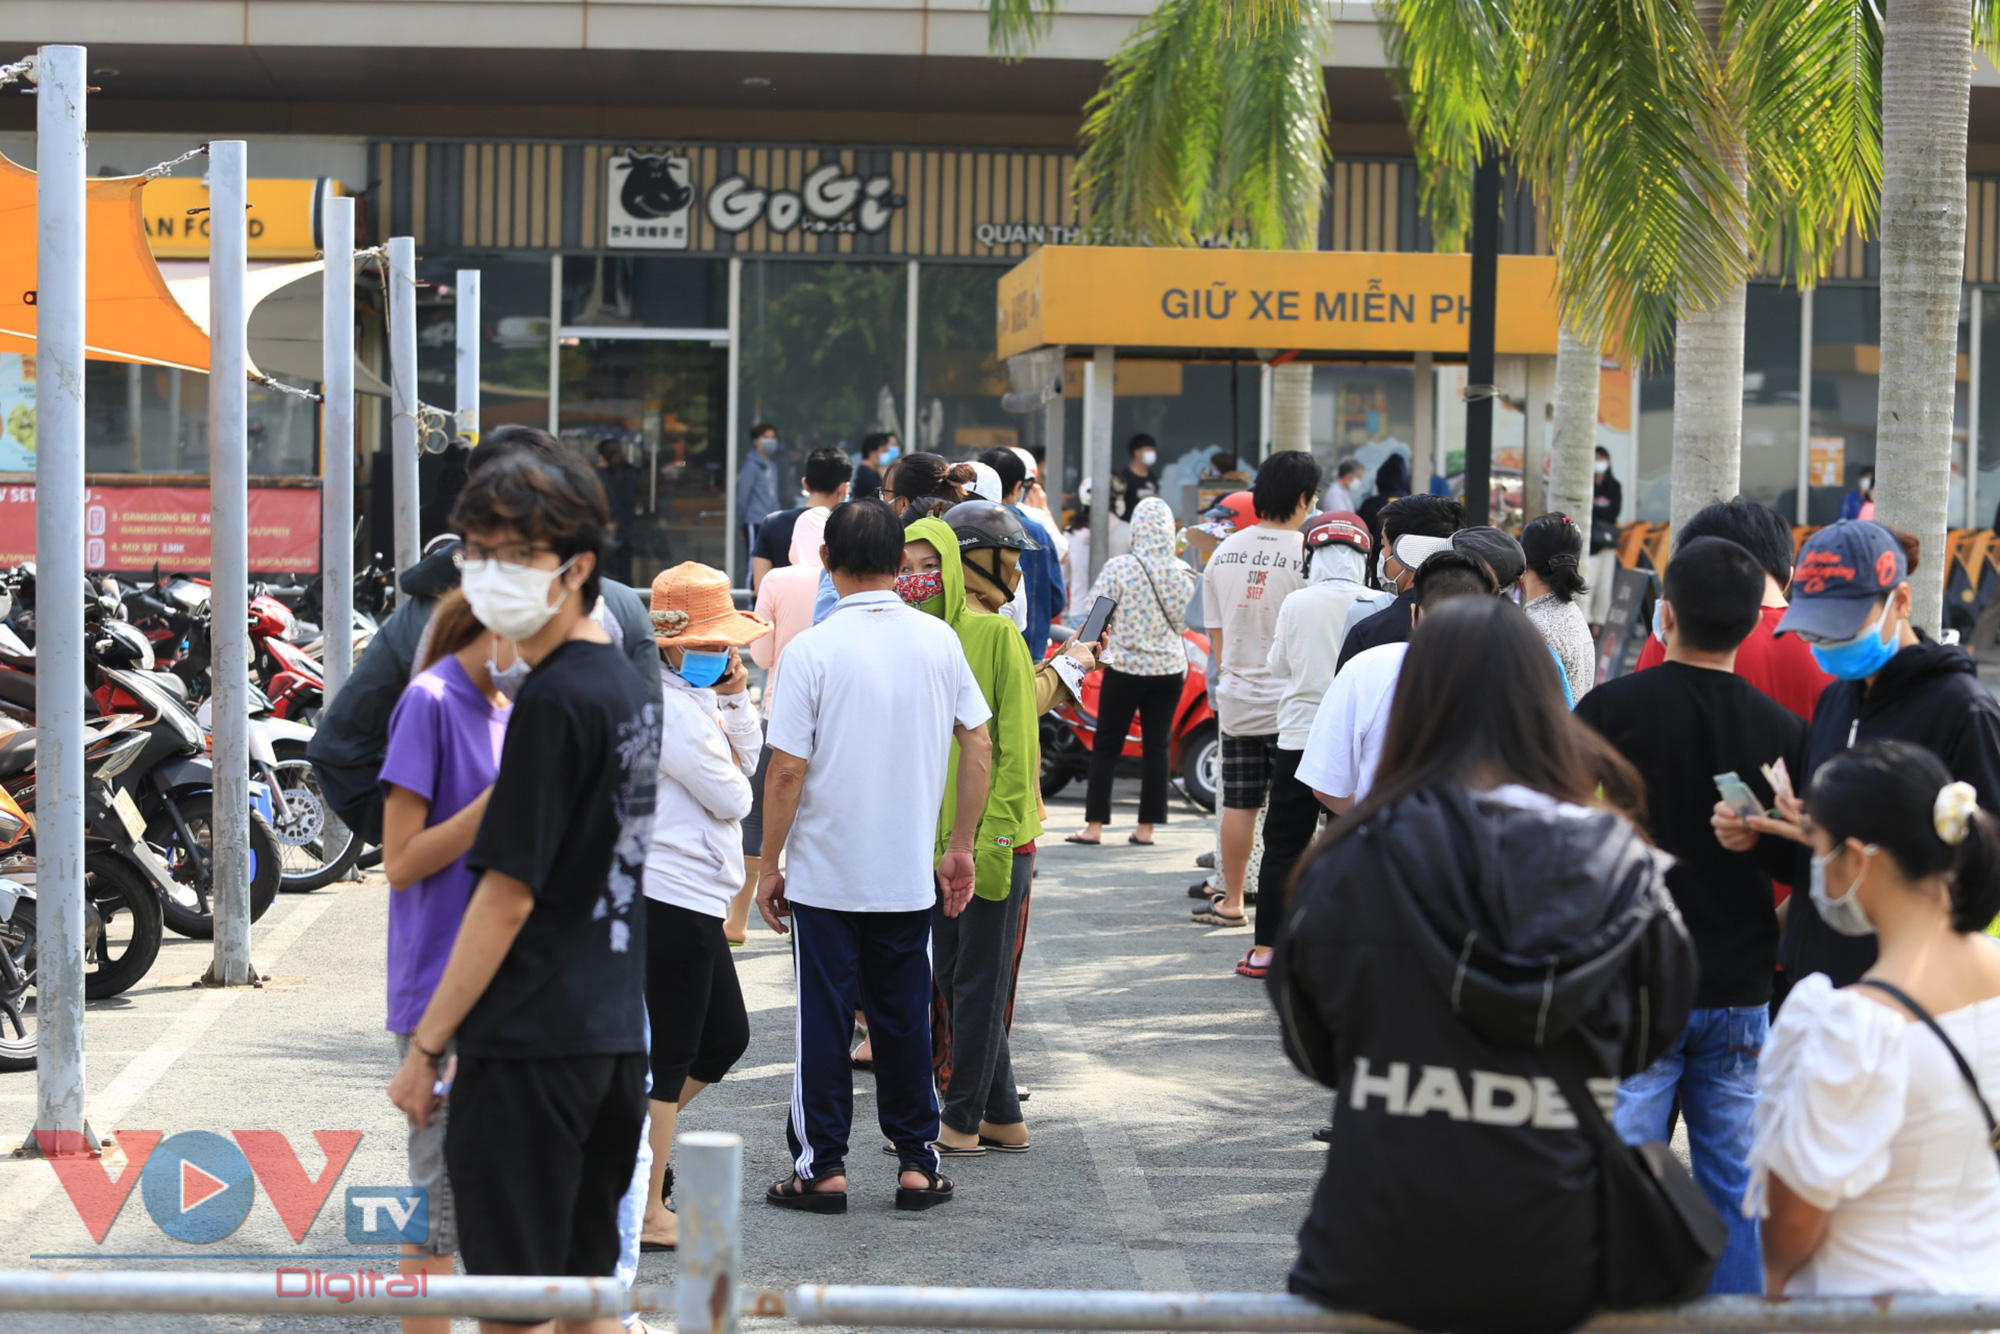 Từ sáng sớm, tại siêu thị Emart trên đường Phan Văn Trị (quận Gò Vấp), dòng người xếp hàng dài lê thê chờ khai báo y tế, đo thân nhiệt để vào mua thực phẩm